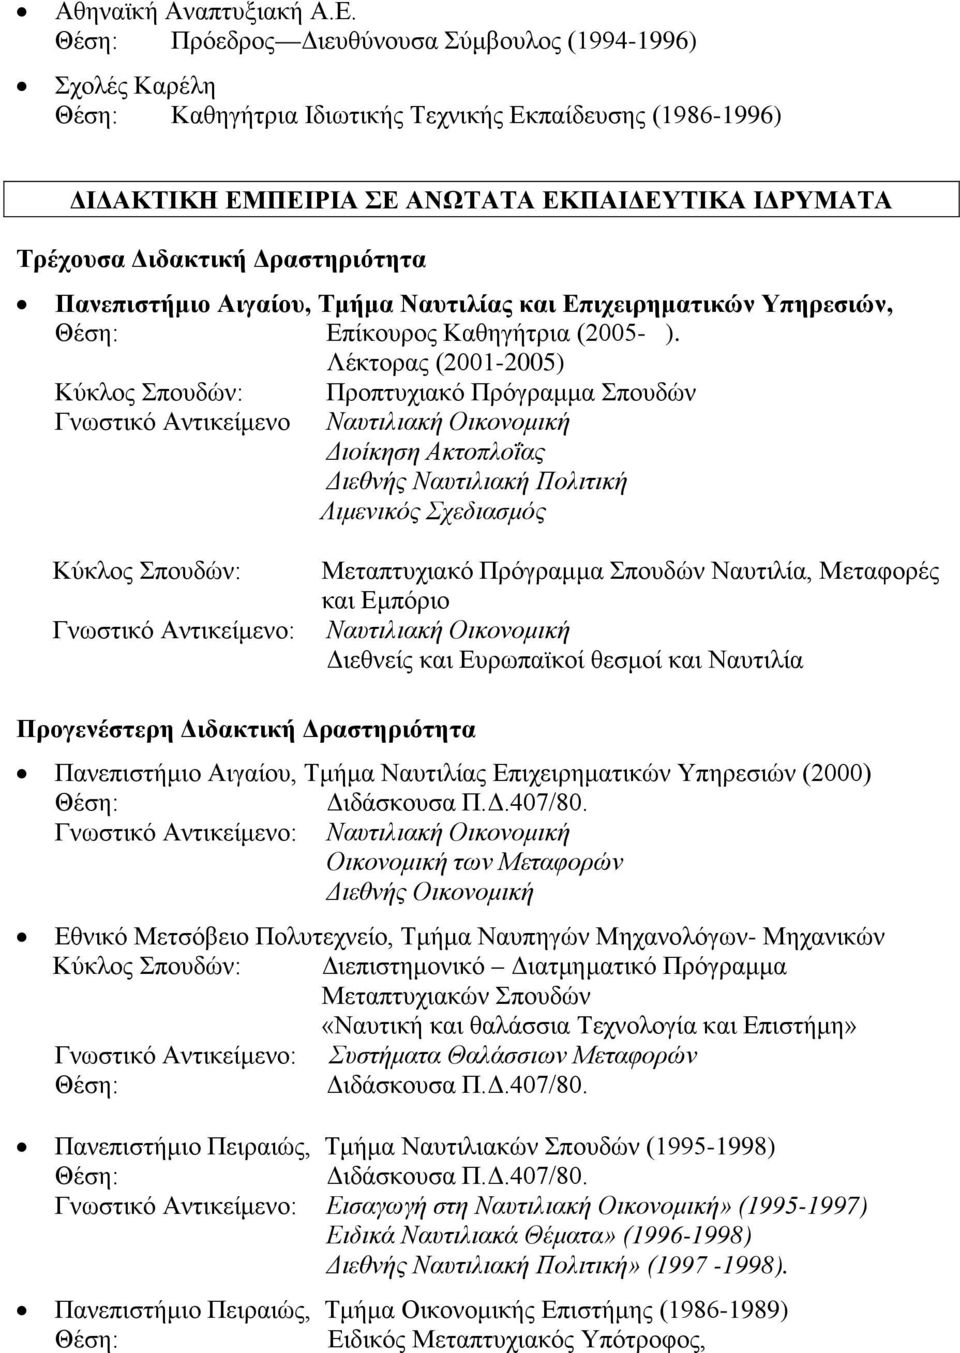 Δραστηριότητα Πανεπιστήμιο Αιγαίου, Τμήμα Ναυτιλίας και Επιχειρηματικών Υπηρεσιών, Θέση: Επίκουρος Καθηγήτρια (2005- ).